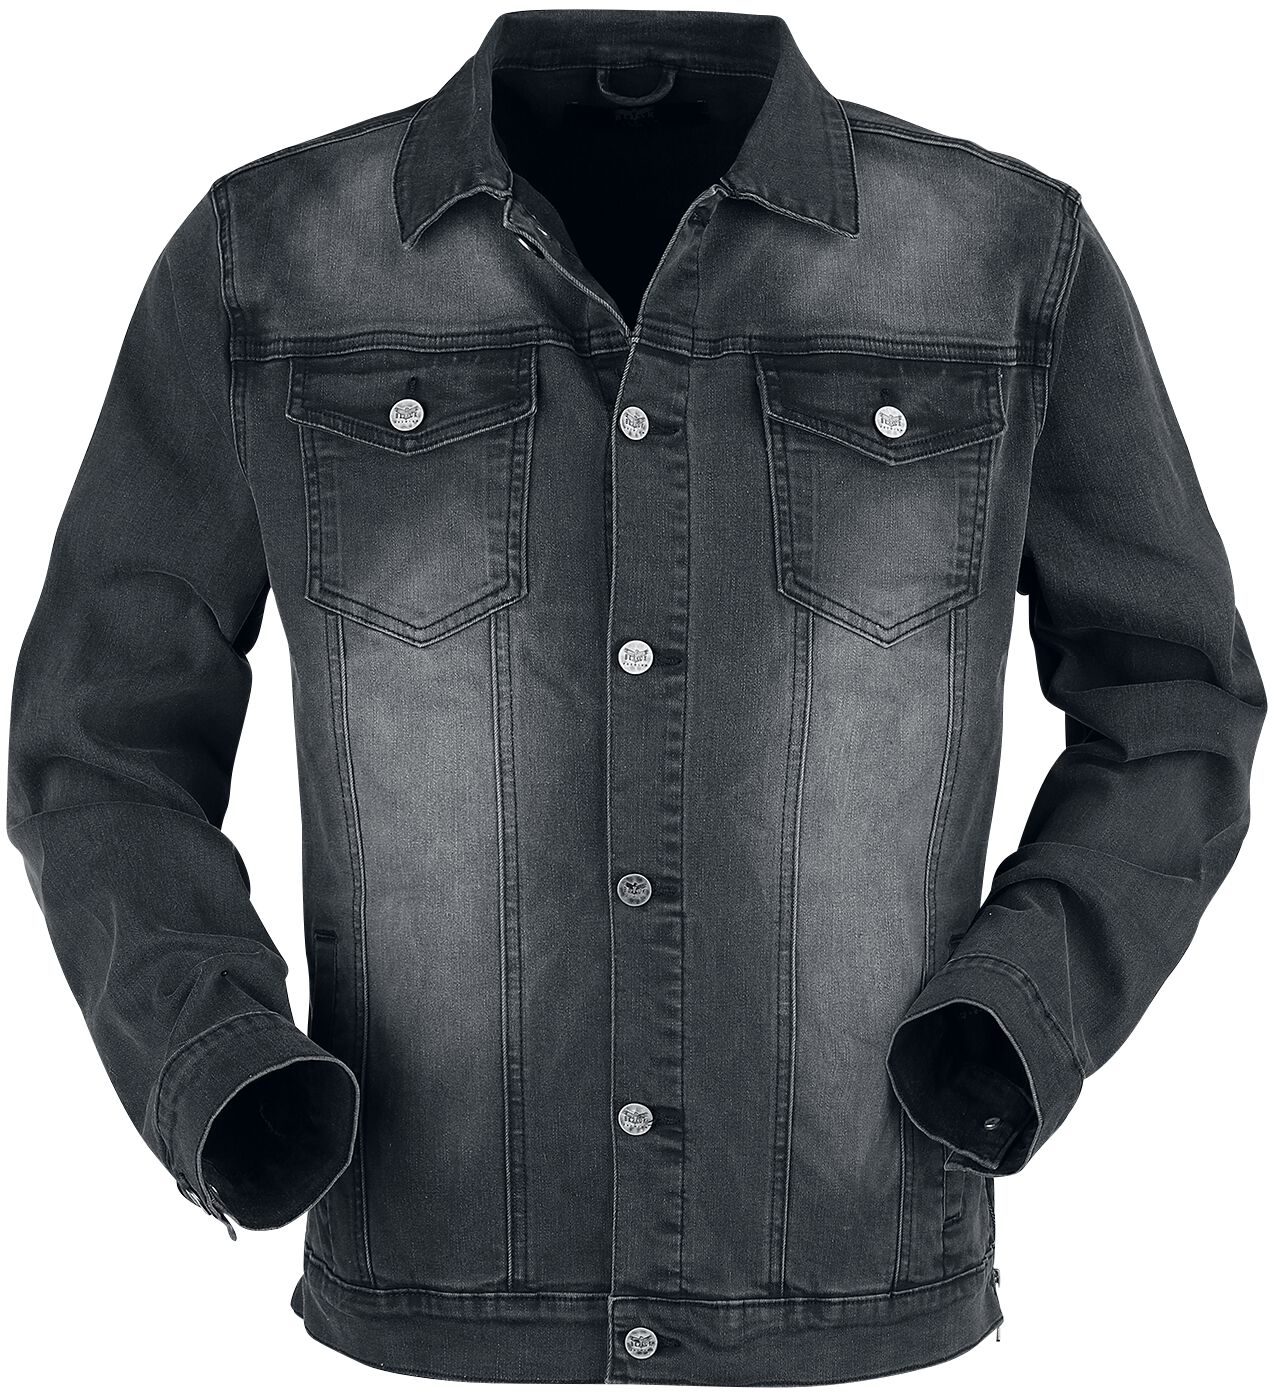 Black Premium by EMP Jeansjacke - dunkelgraue Jacke mit Brusttaschen und Knopfleiste - S bis XXL - für Männer - Größe L - dunkelgrau